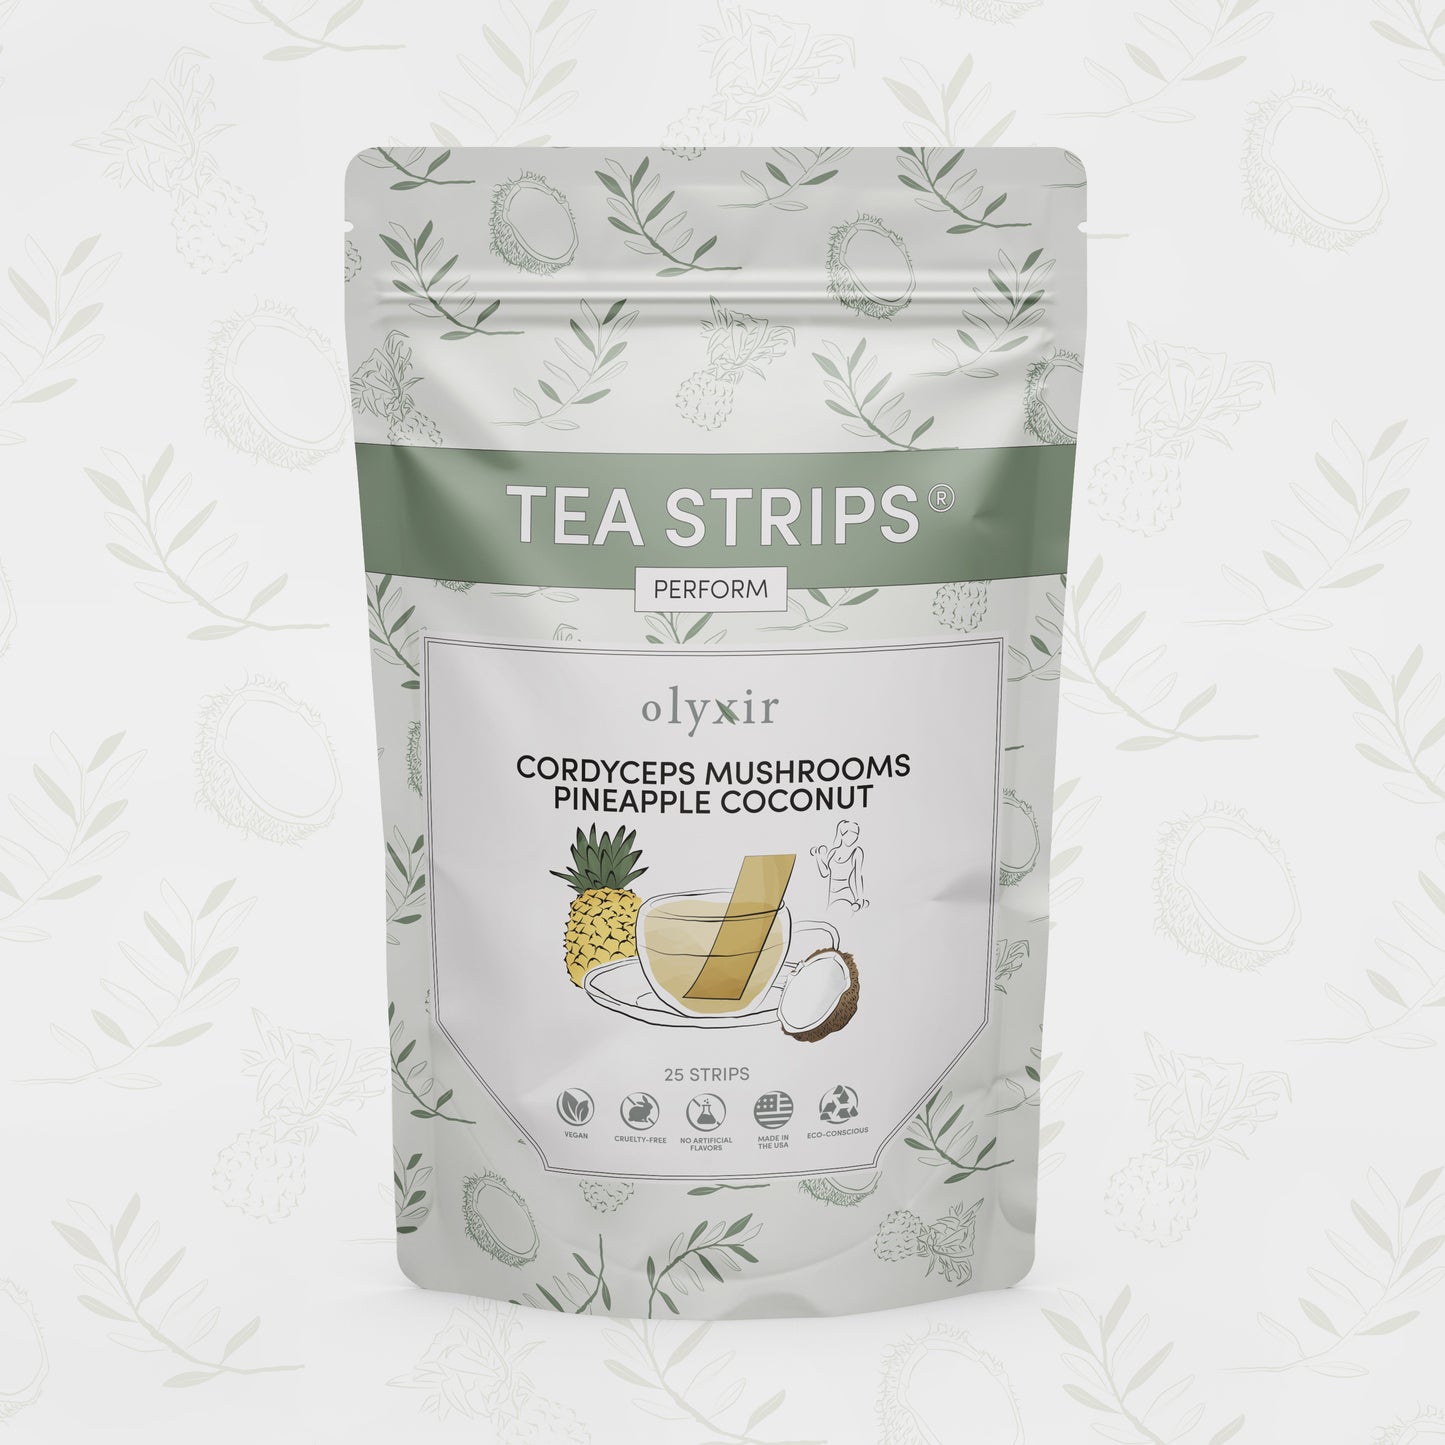 Perform Tea Strips | Cordyceps Mushrooms Pineapple Coconut Tea Strips | 25 Servings